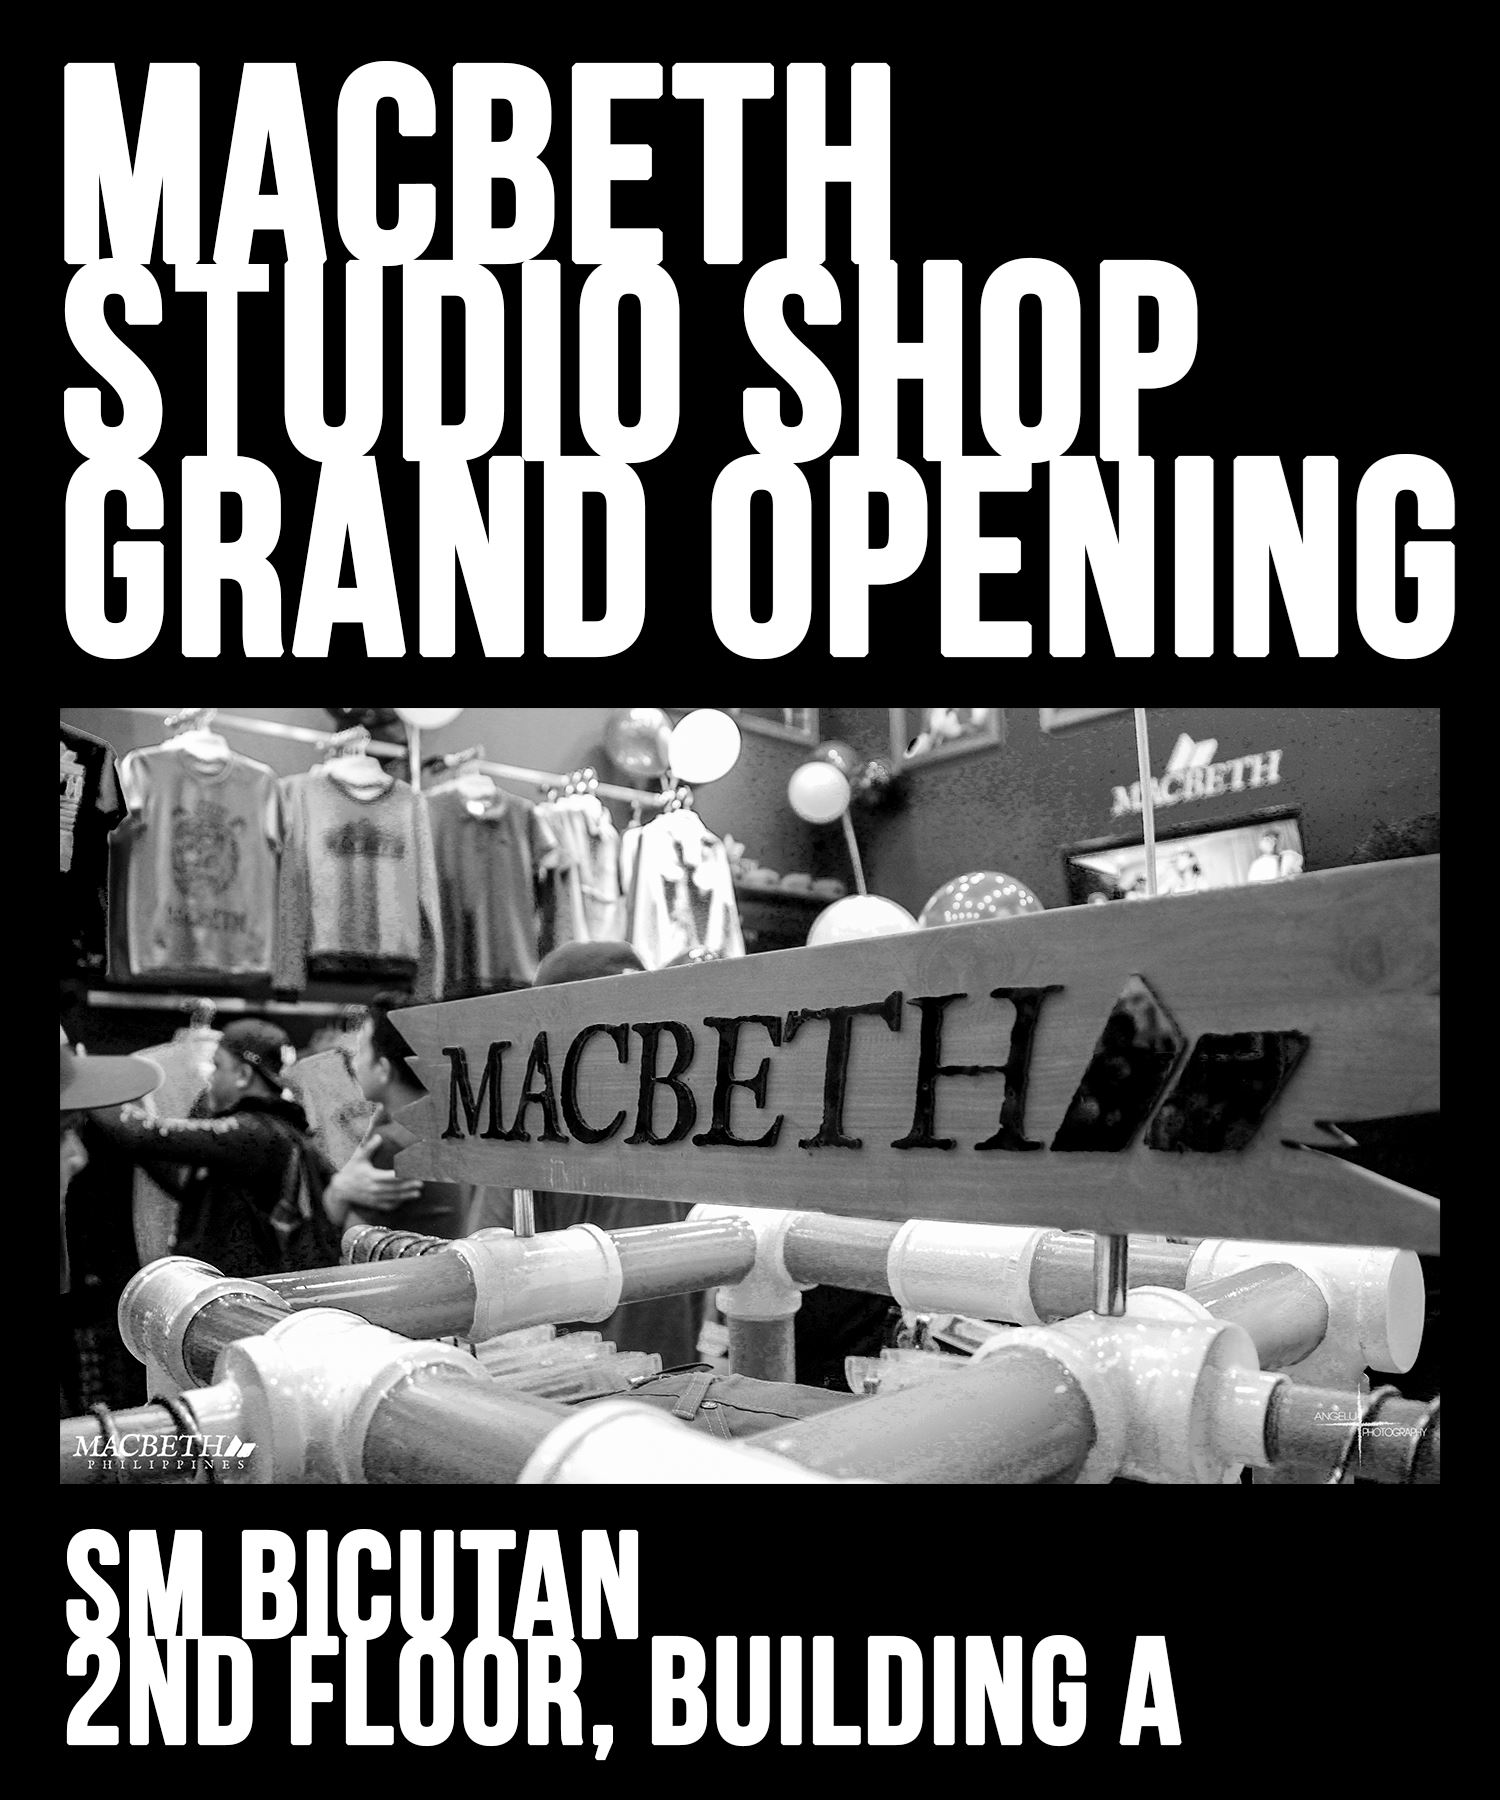 The Macbeth Studio Shop Opening Recap